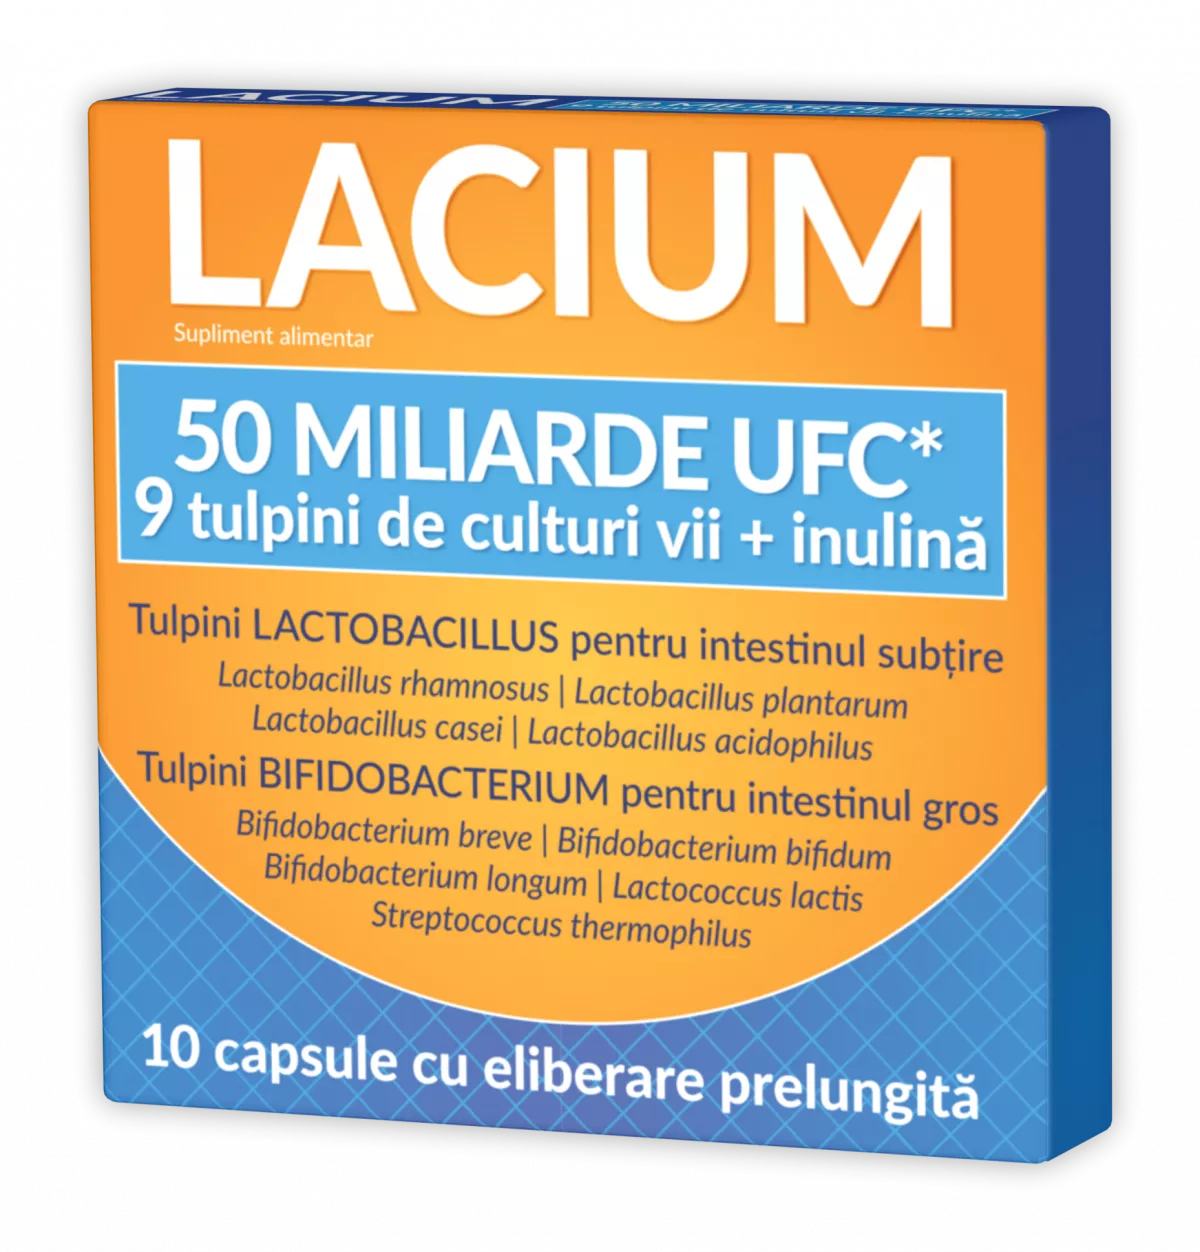 Lacium 50miliarde UFC x 10cps.elib.prel (Zdrovit), [],epastila.ro